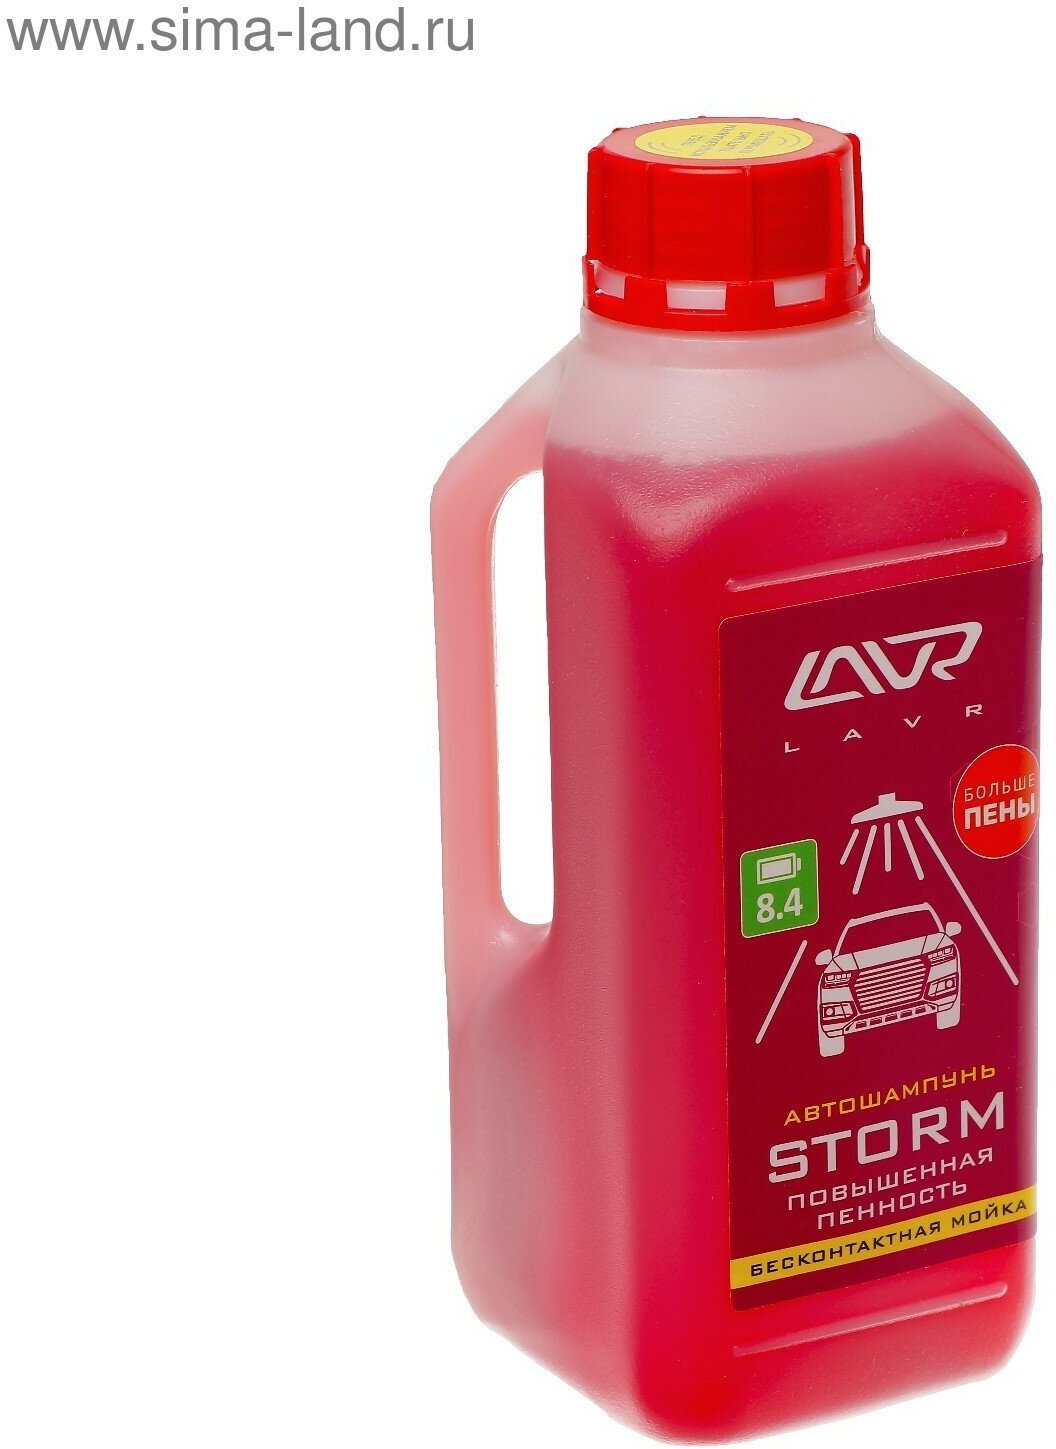 Автошампунь Storm бесконтактный, повышенная пенность 1:100, 1 л, бутылка Ln2336